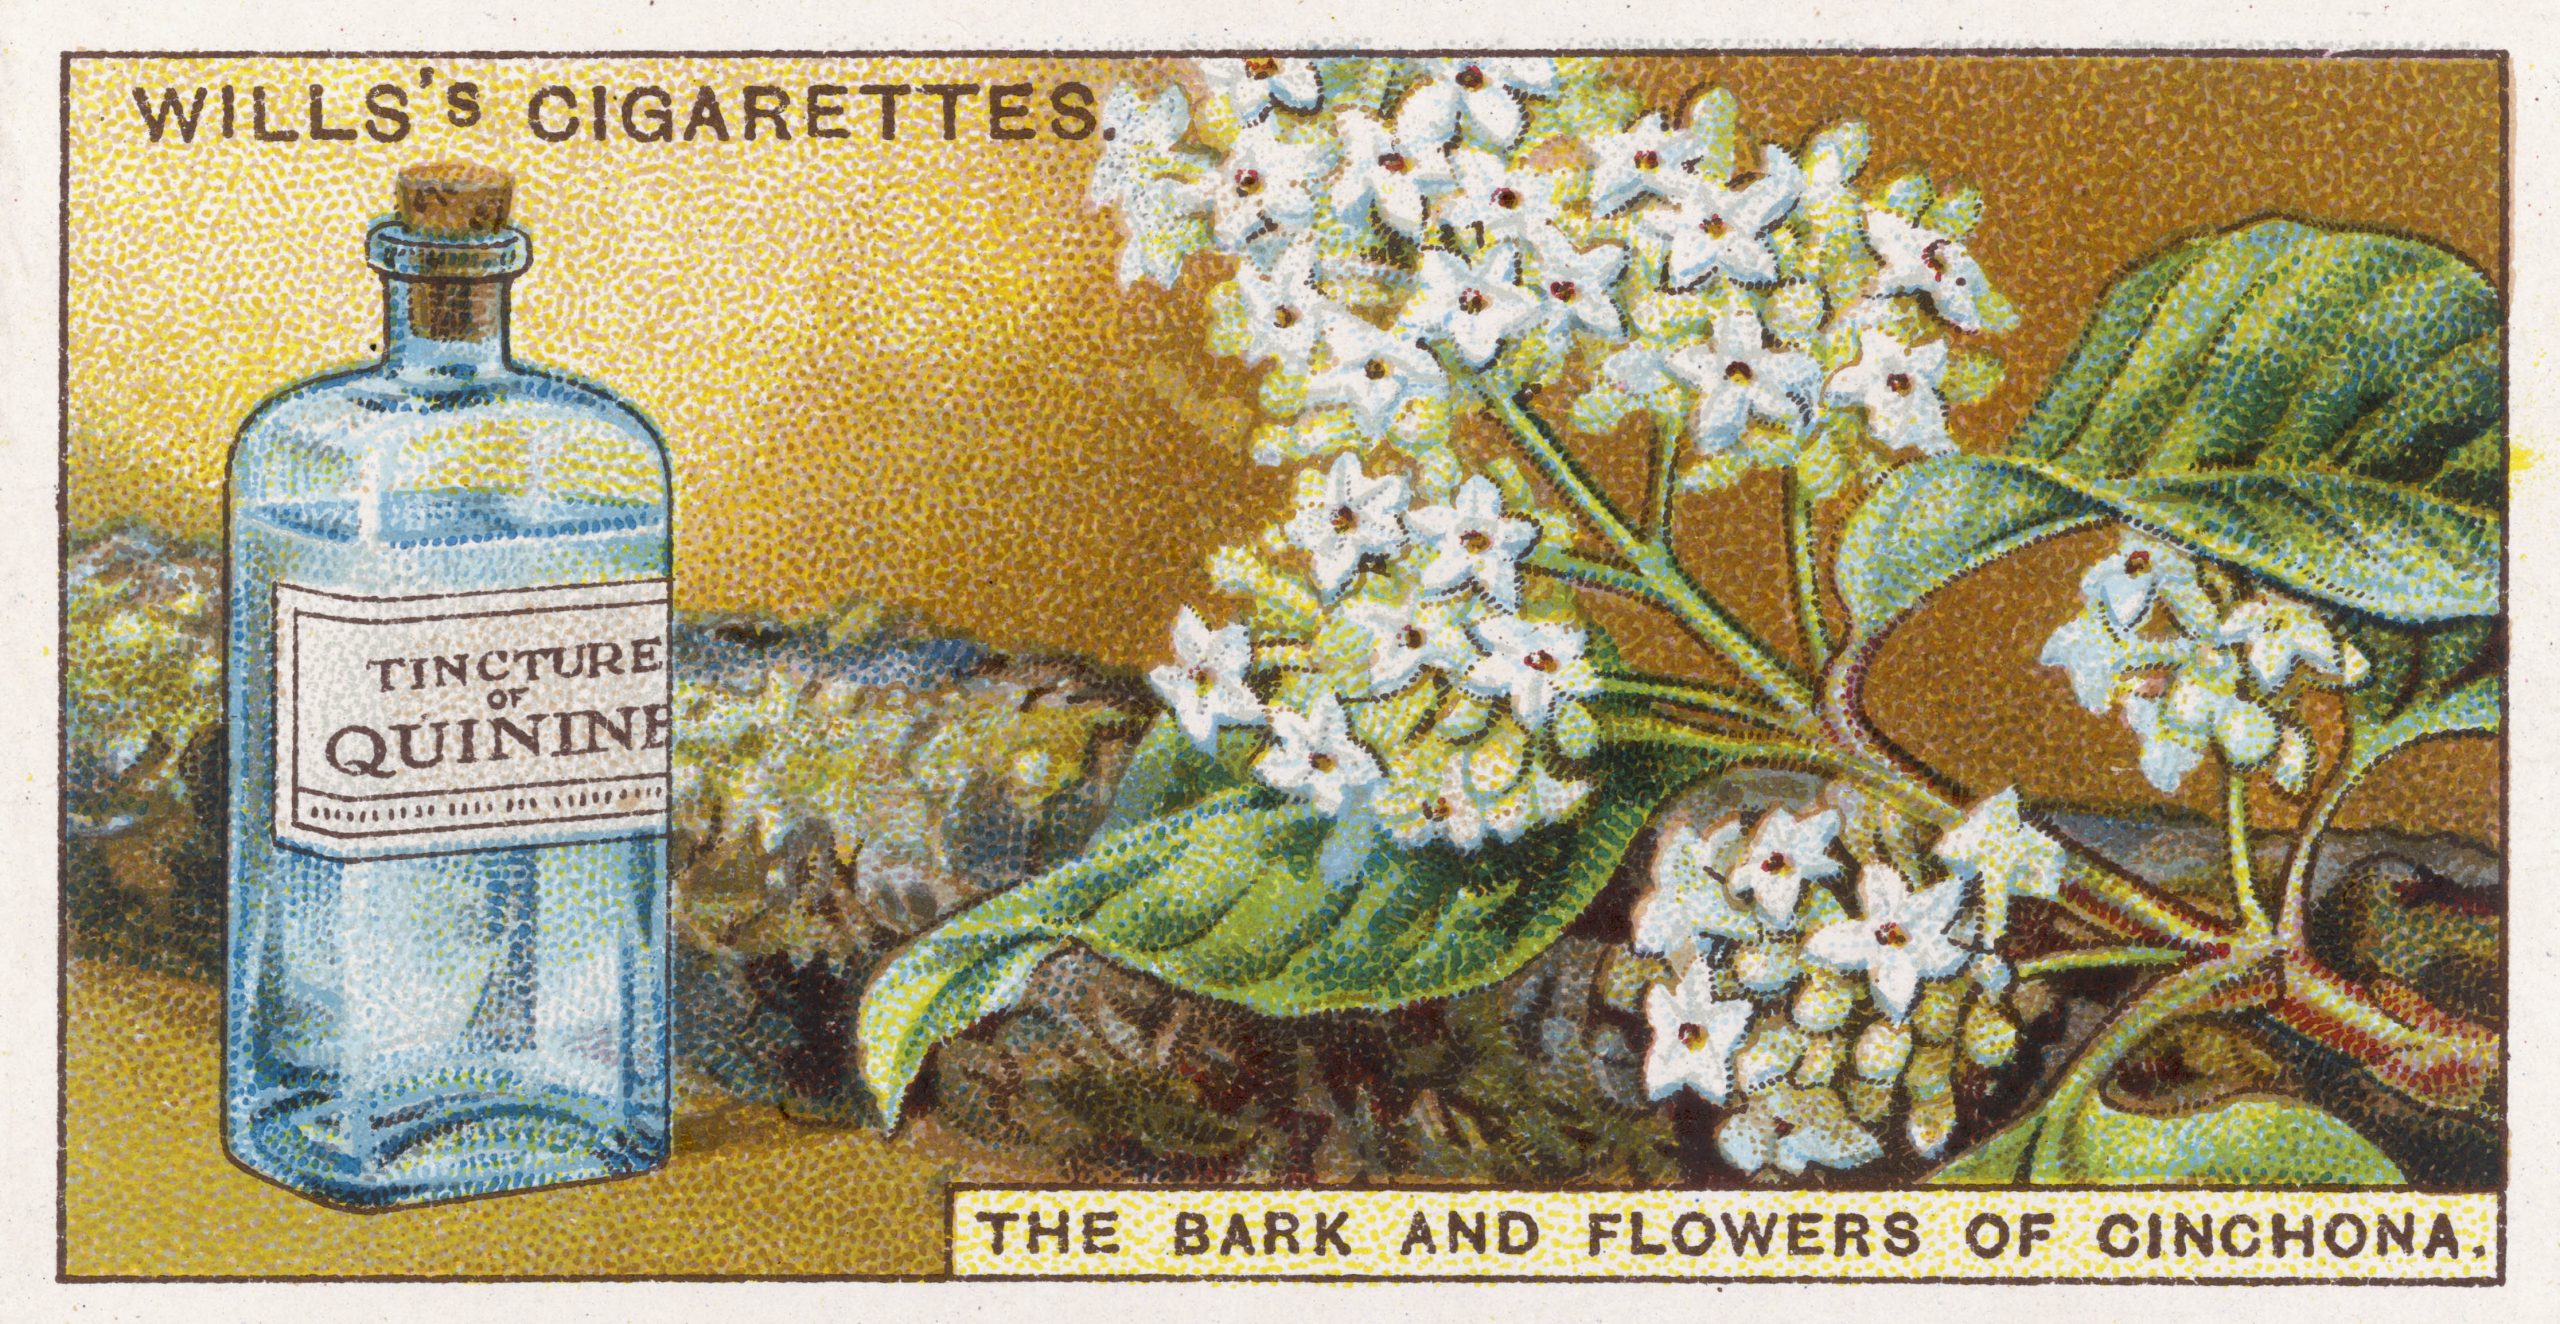 Arte de anúncio antigo e colorido do produto Tincture of Quinine em um frasco azul ao lado de pequenas flores brancas. Há o texto: “Wills’s cigarettes. The bark and flowers of chinchona”.